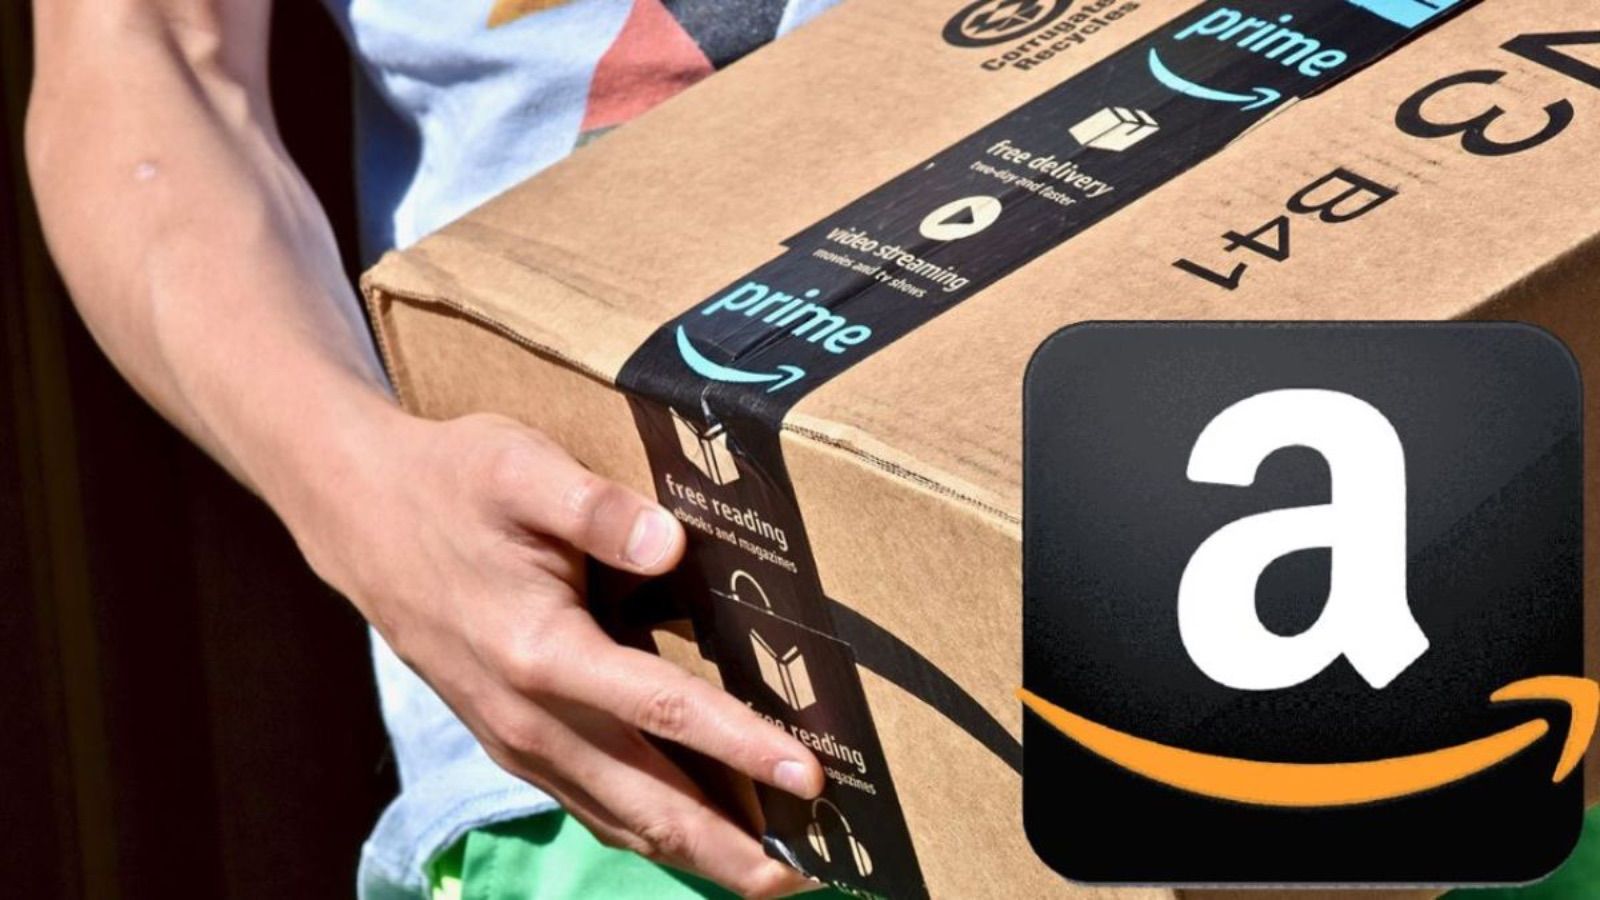 Amazon ora è PAZZA, 10 offerte segrete all'80% di sconto